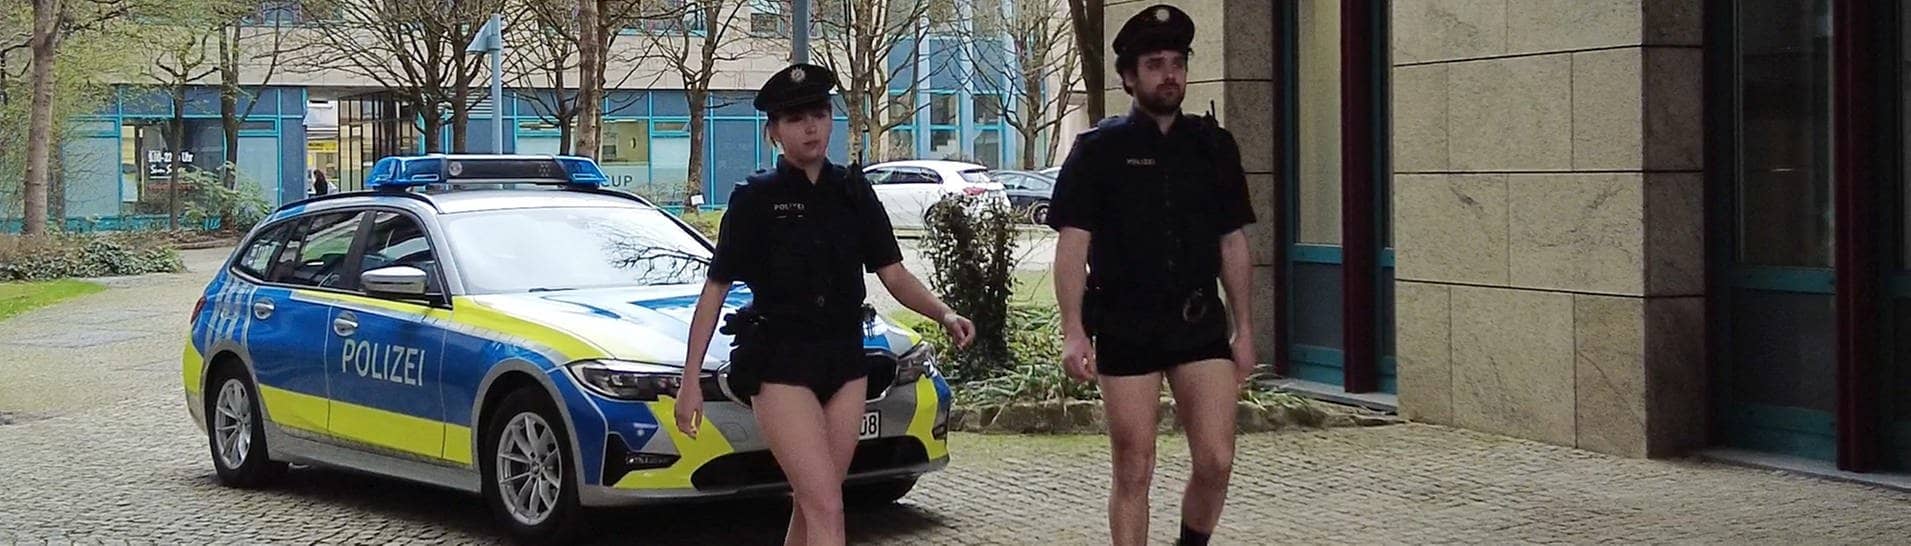 Das Standbild aus einem Youtube-Video der Polizeigewerkschaft (DPolG) zeigt Polizisten ohne Hosen und soll den Mangel an Dienstkleidung bei der bayerischen Polizei anklagen.